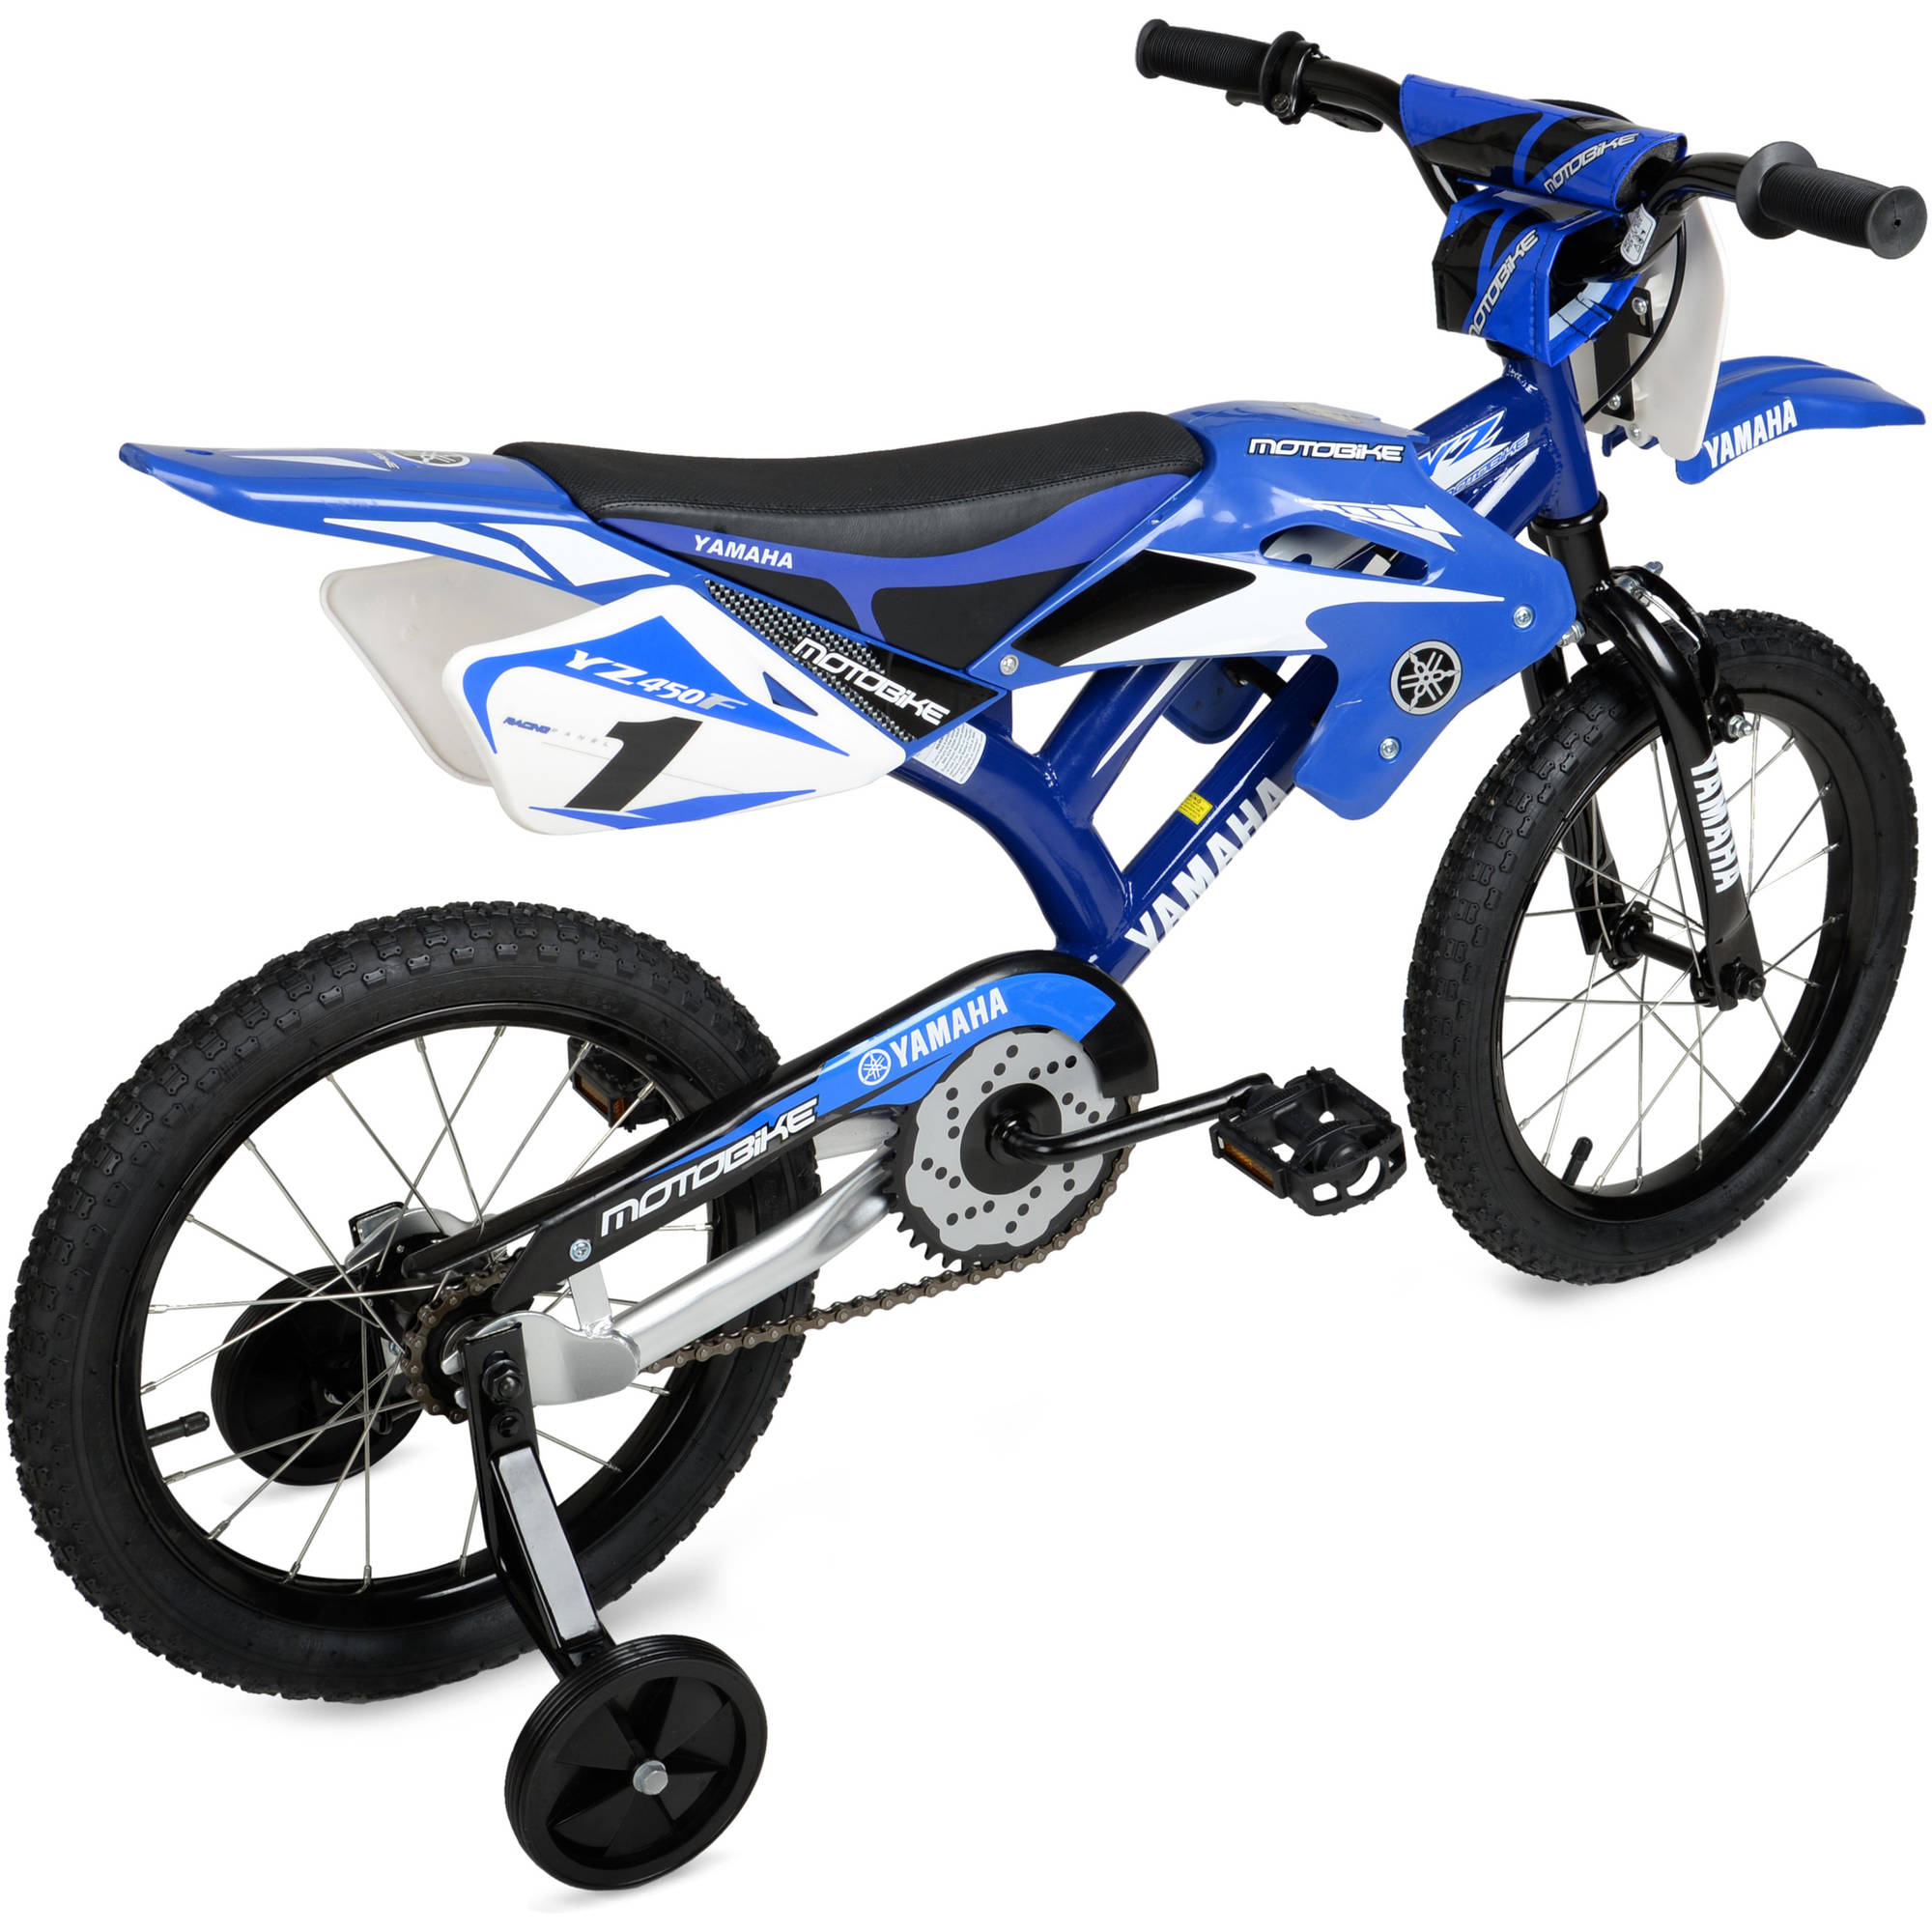 Yamaha 16" Moto BMX Boys Bike, Blue - image 3 of 6